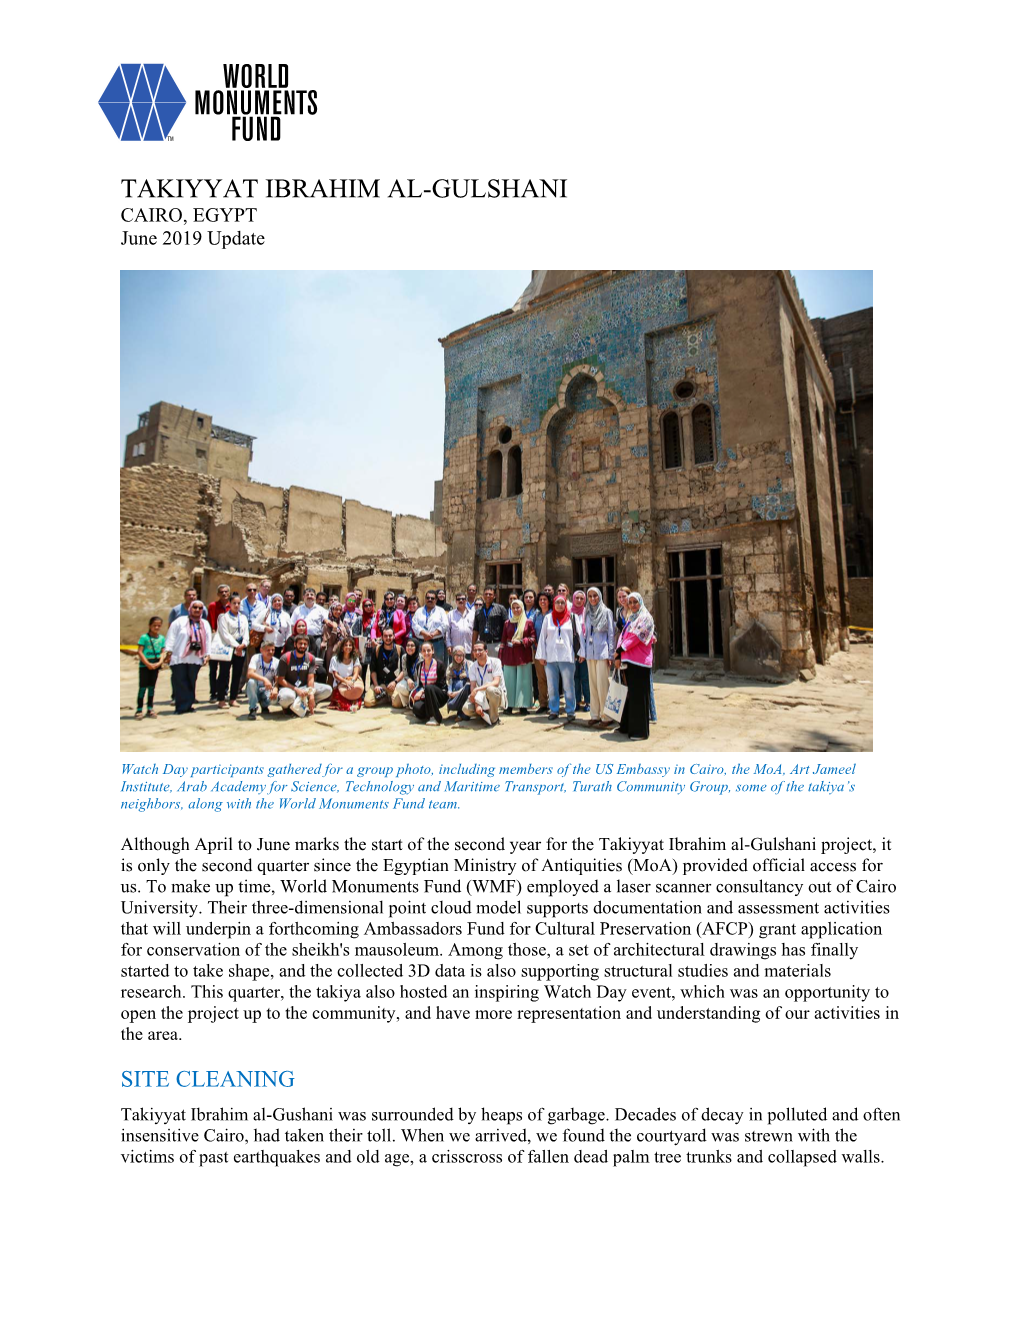 TAKIYYAT IBRAHIM AL-GULSHANI CAIRO, EGYPT June 2019 Update